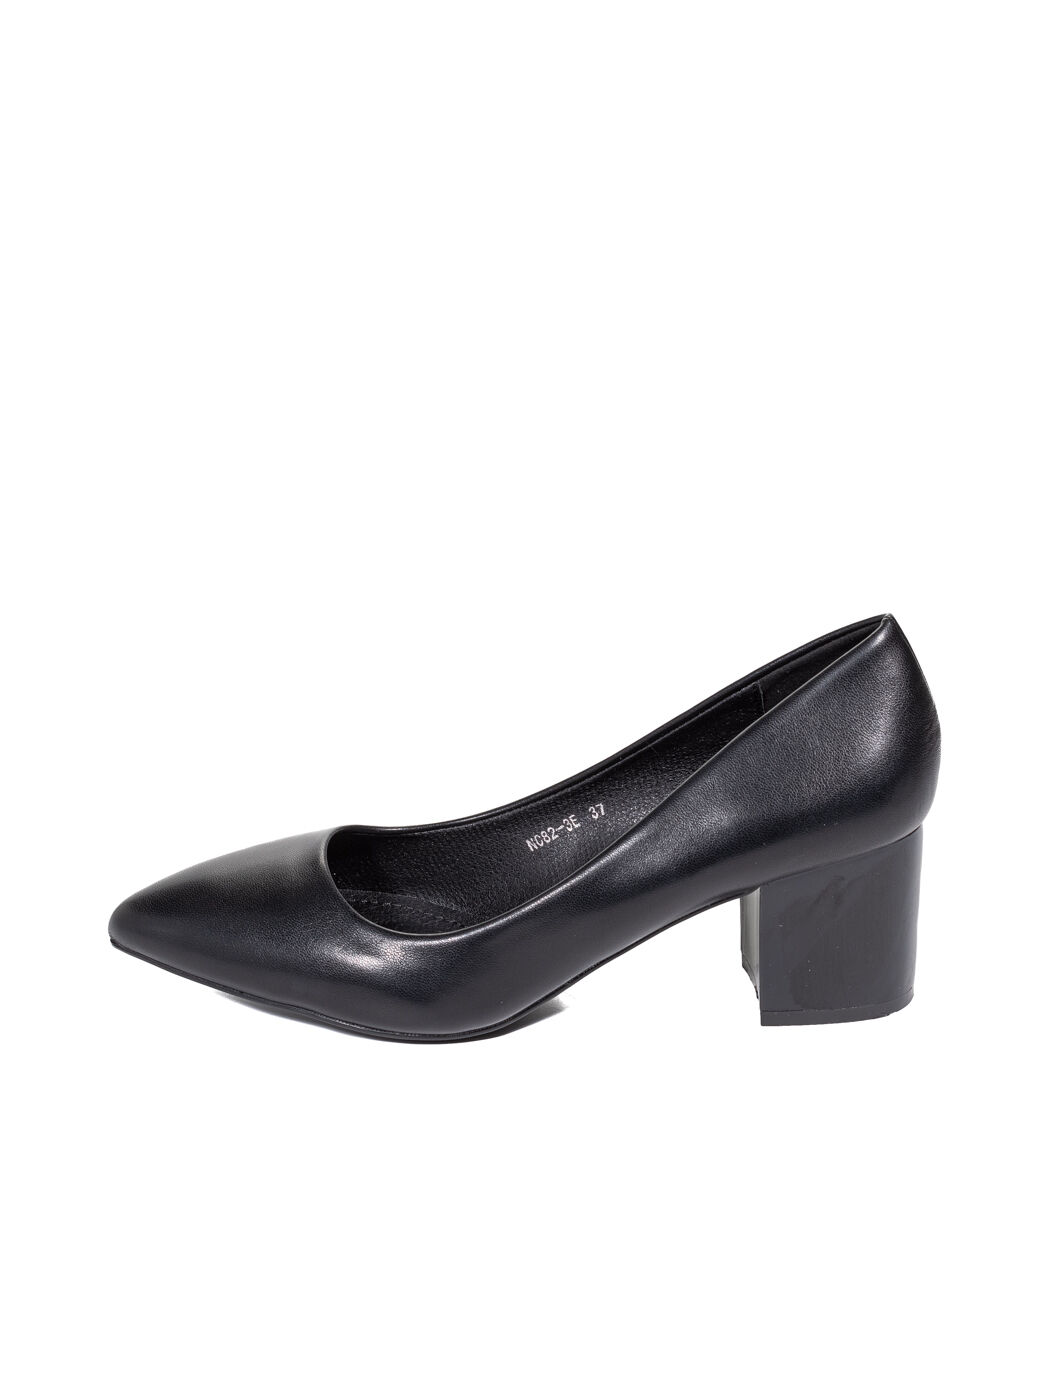 Туфли женские черные экокожа каблук устойчивый демисезон от производителя EM